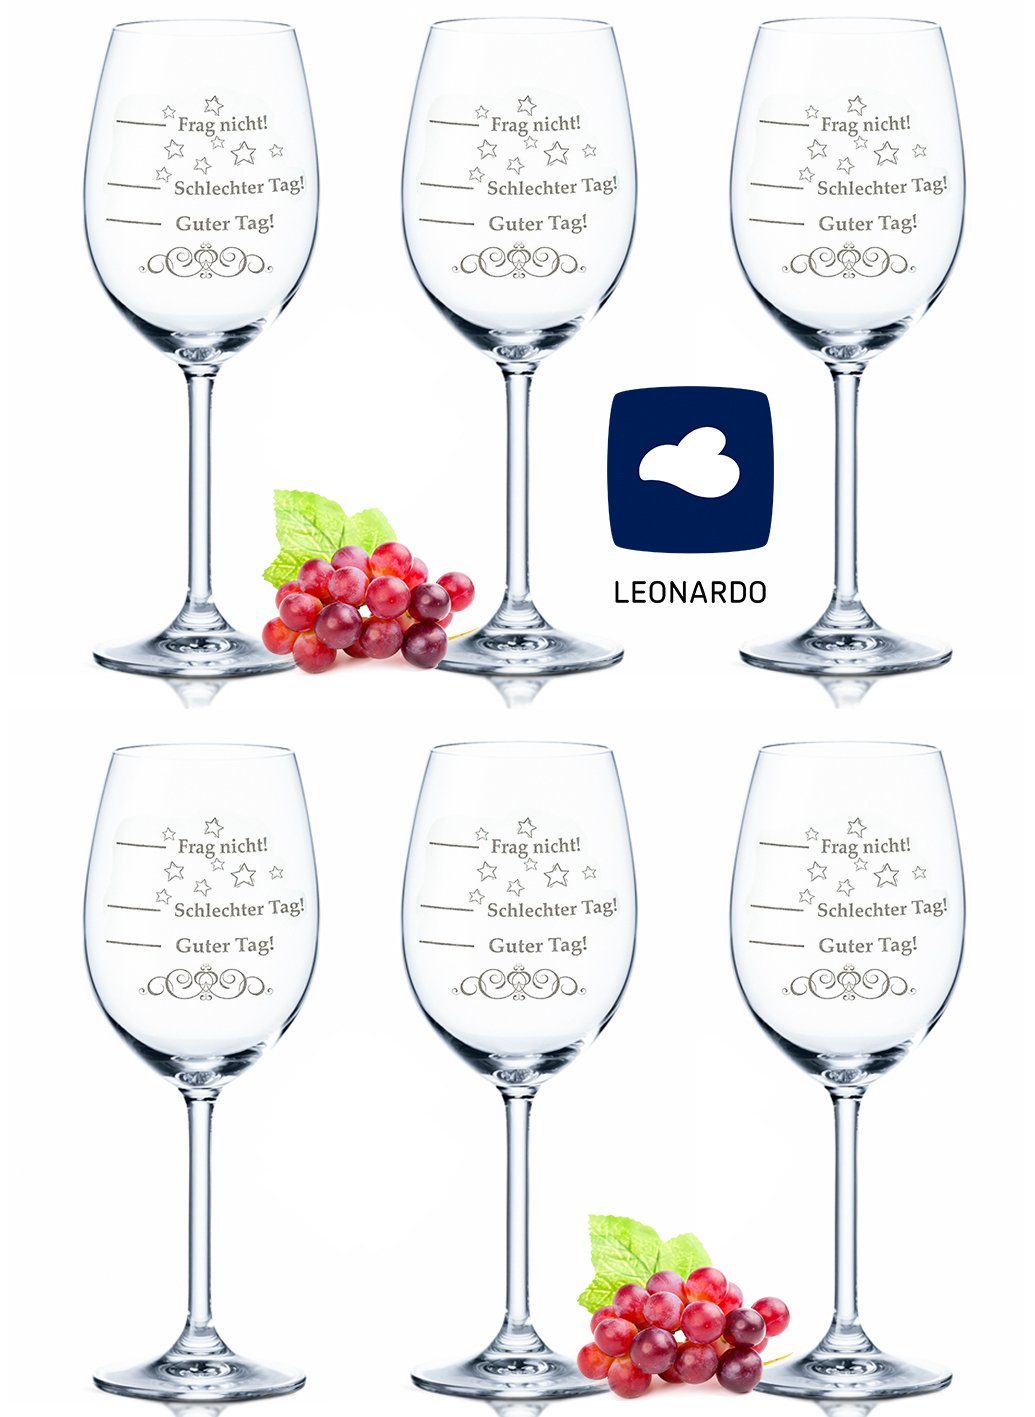 GRAVURZEILE Rotweinglas Leonardo Weingläser - Schlechter Tag, Guter Tag -  Frag nicht! im 6er Set - Stimmungsglas - Rotweingläser & Weißweingläser -  Geiles Geschenk - Party Set, Glas